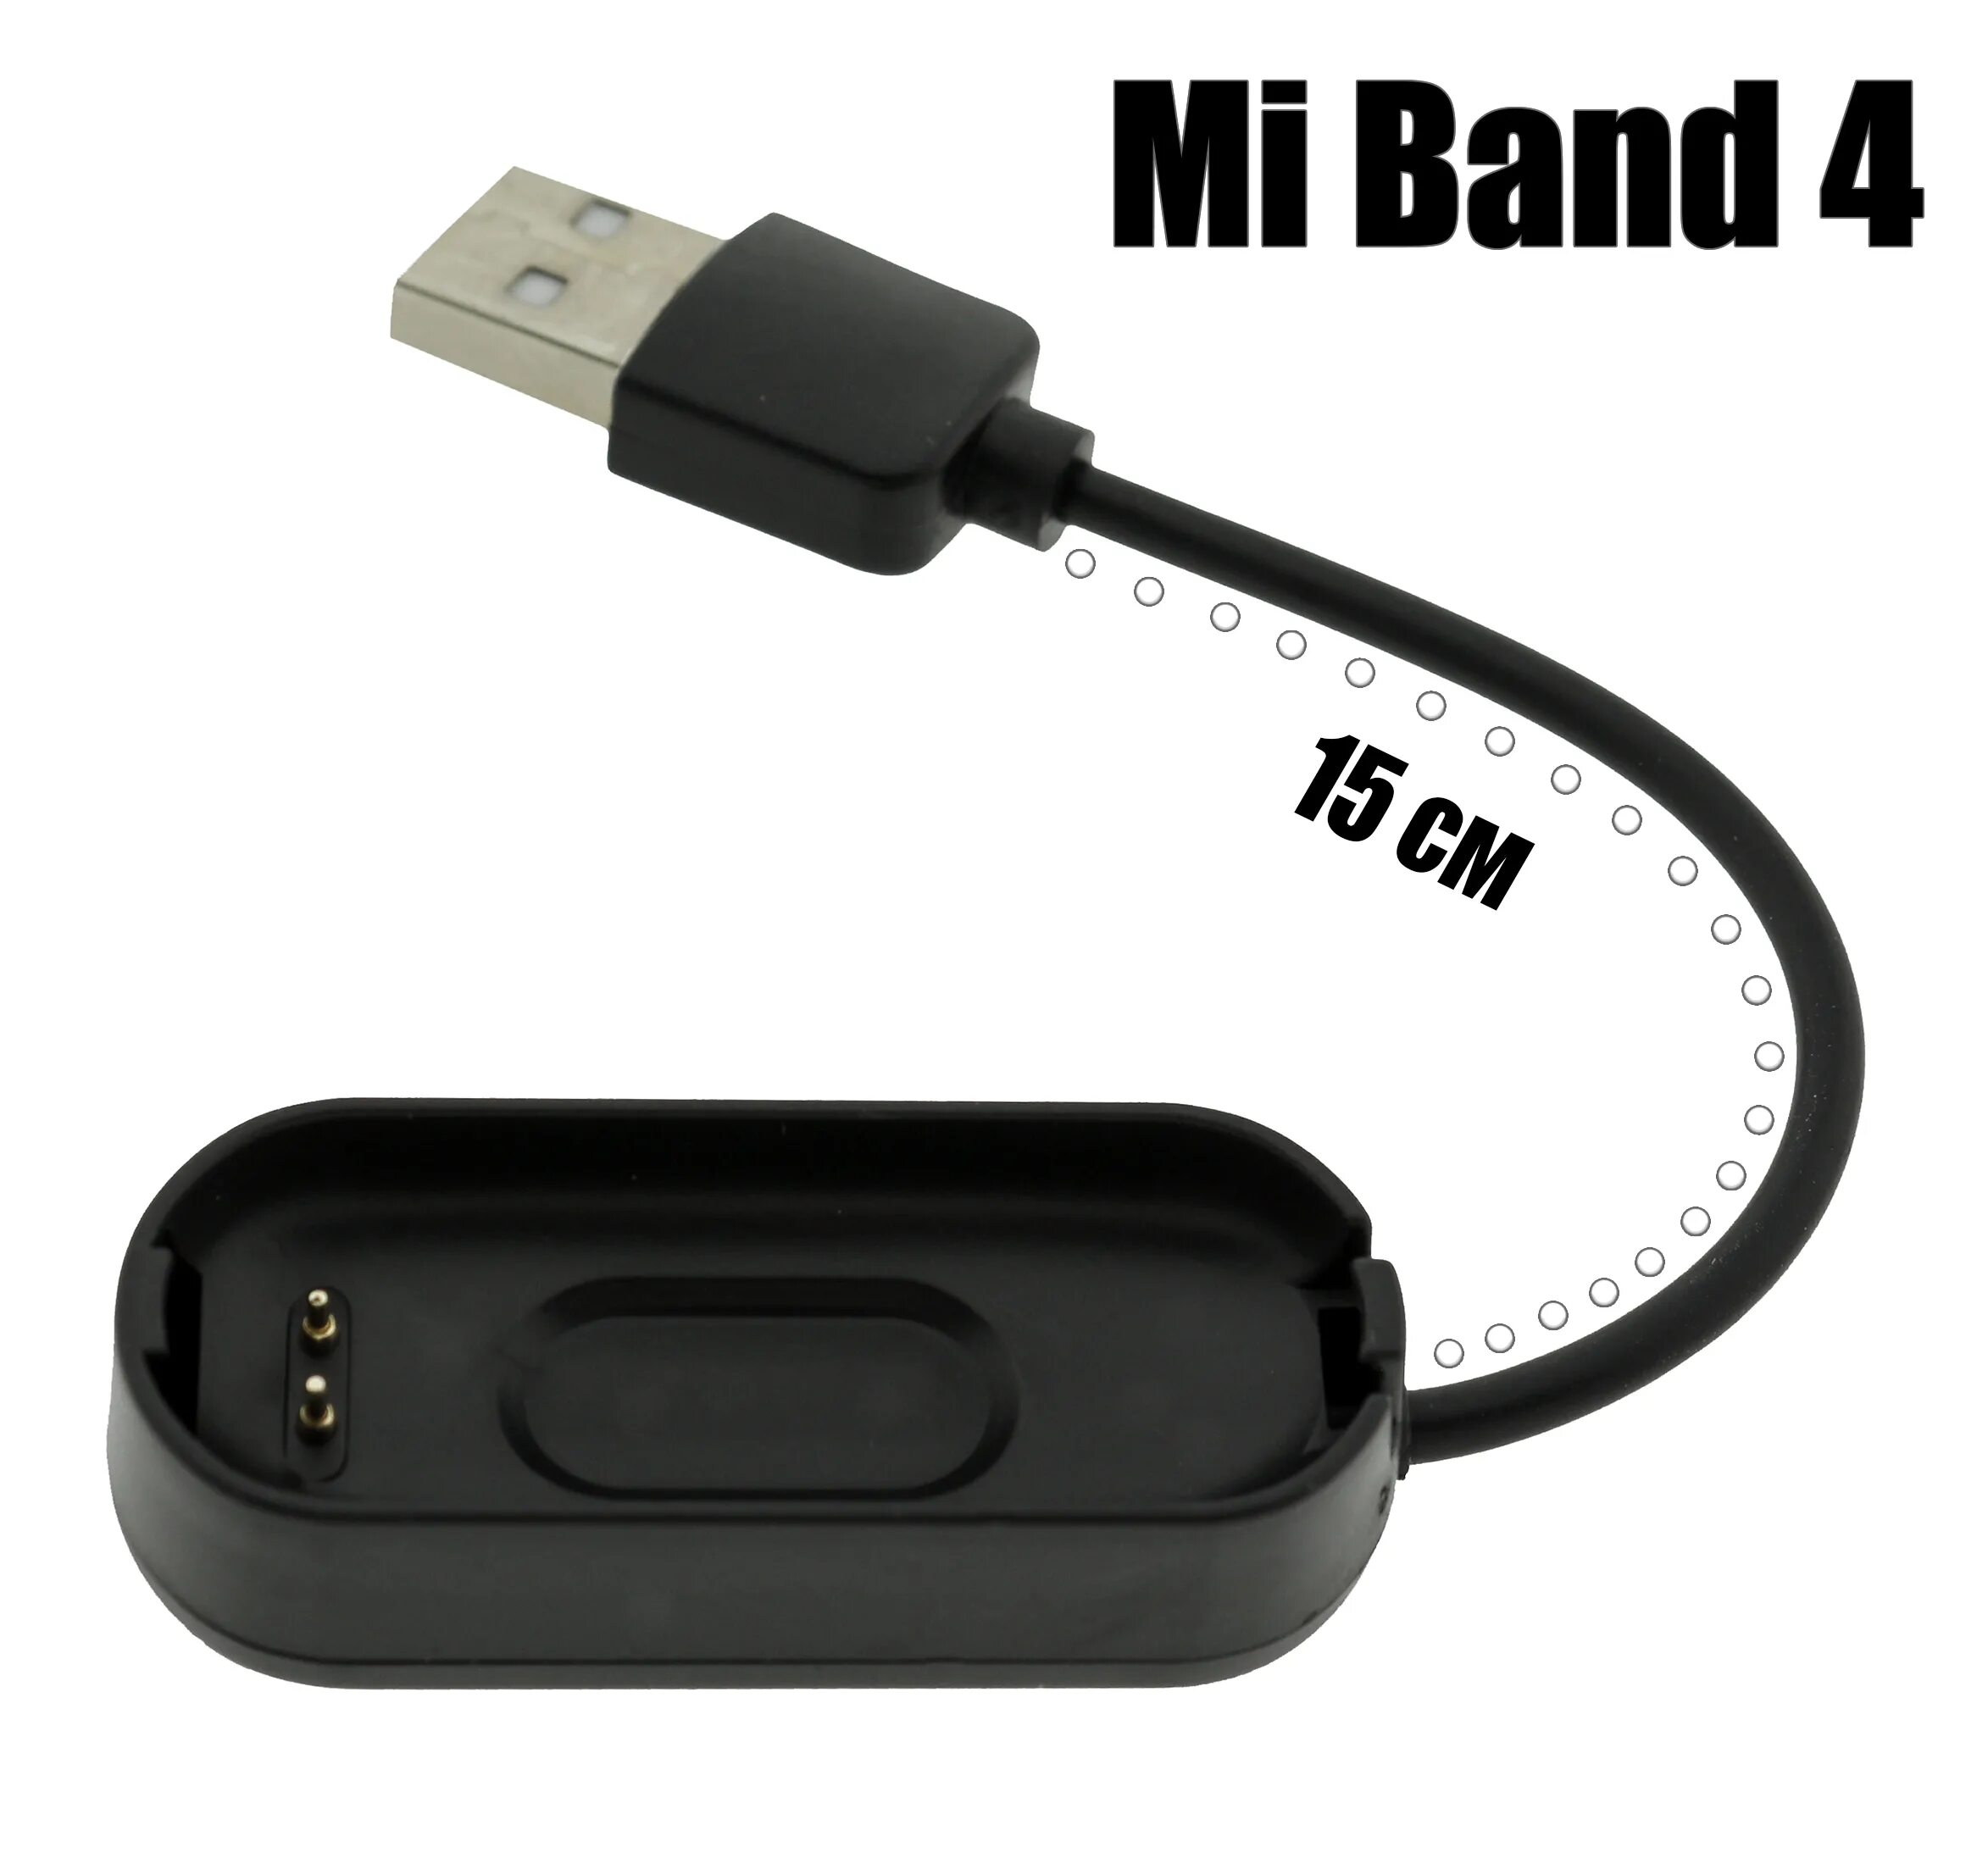 Ми банд 4 зарядка. Зарядка для Xiaomi mi Band 4. Зарядник для ми бэнд 4. Зарядка для часов mi Band 4.